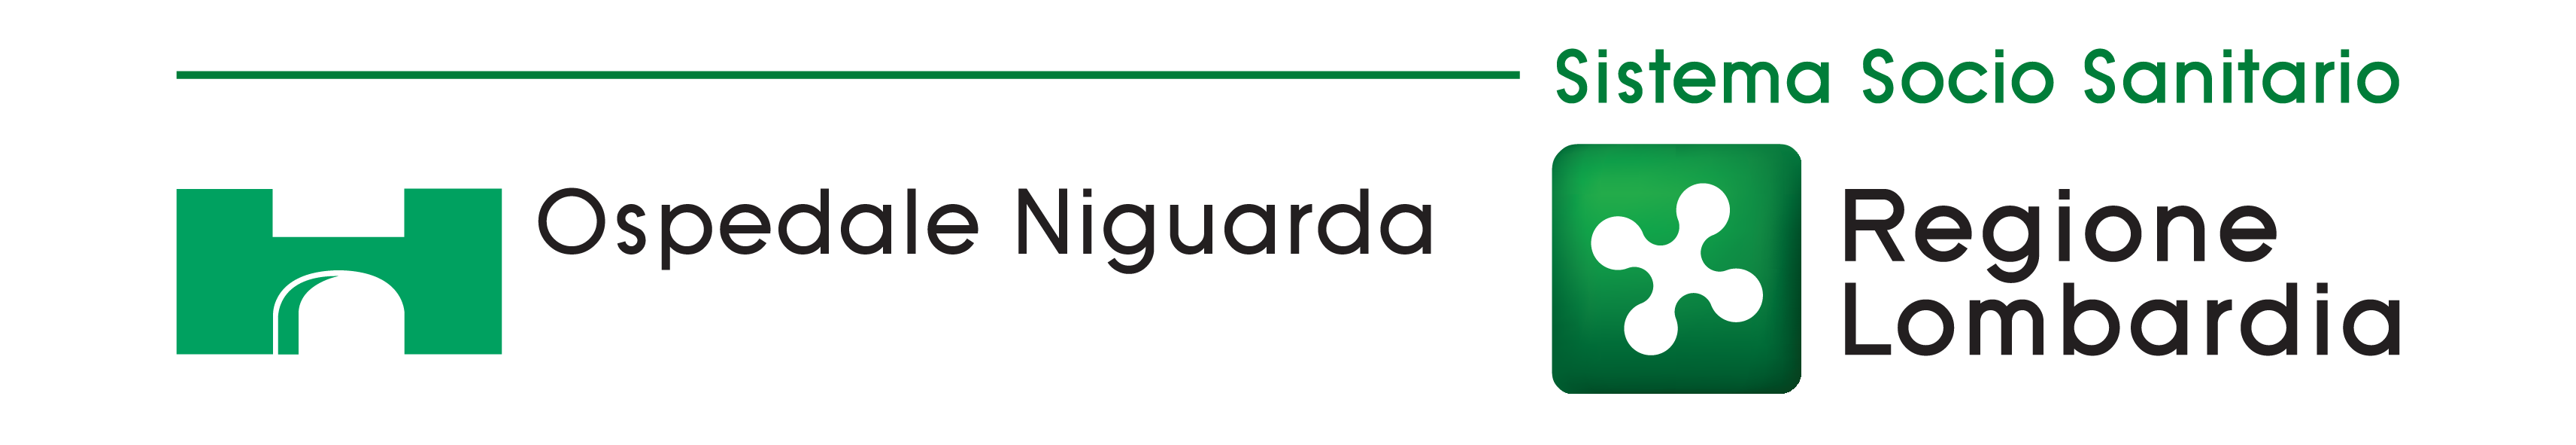 Logo ASST Grande Ospedale Metropolitano Niguarda